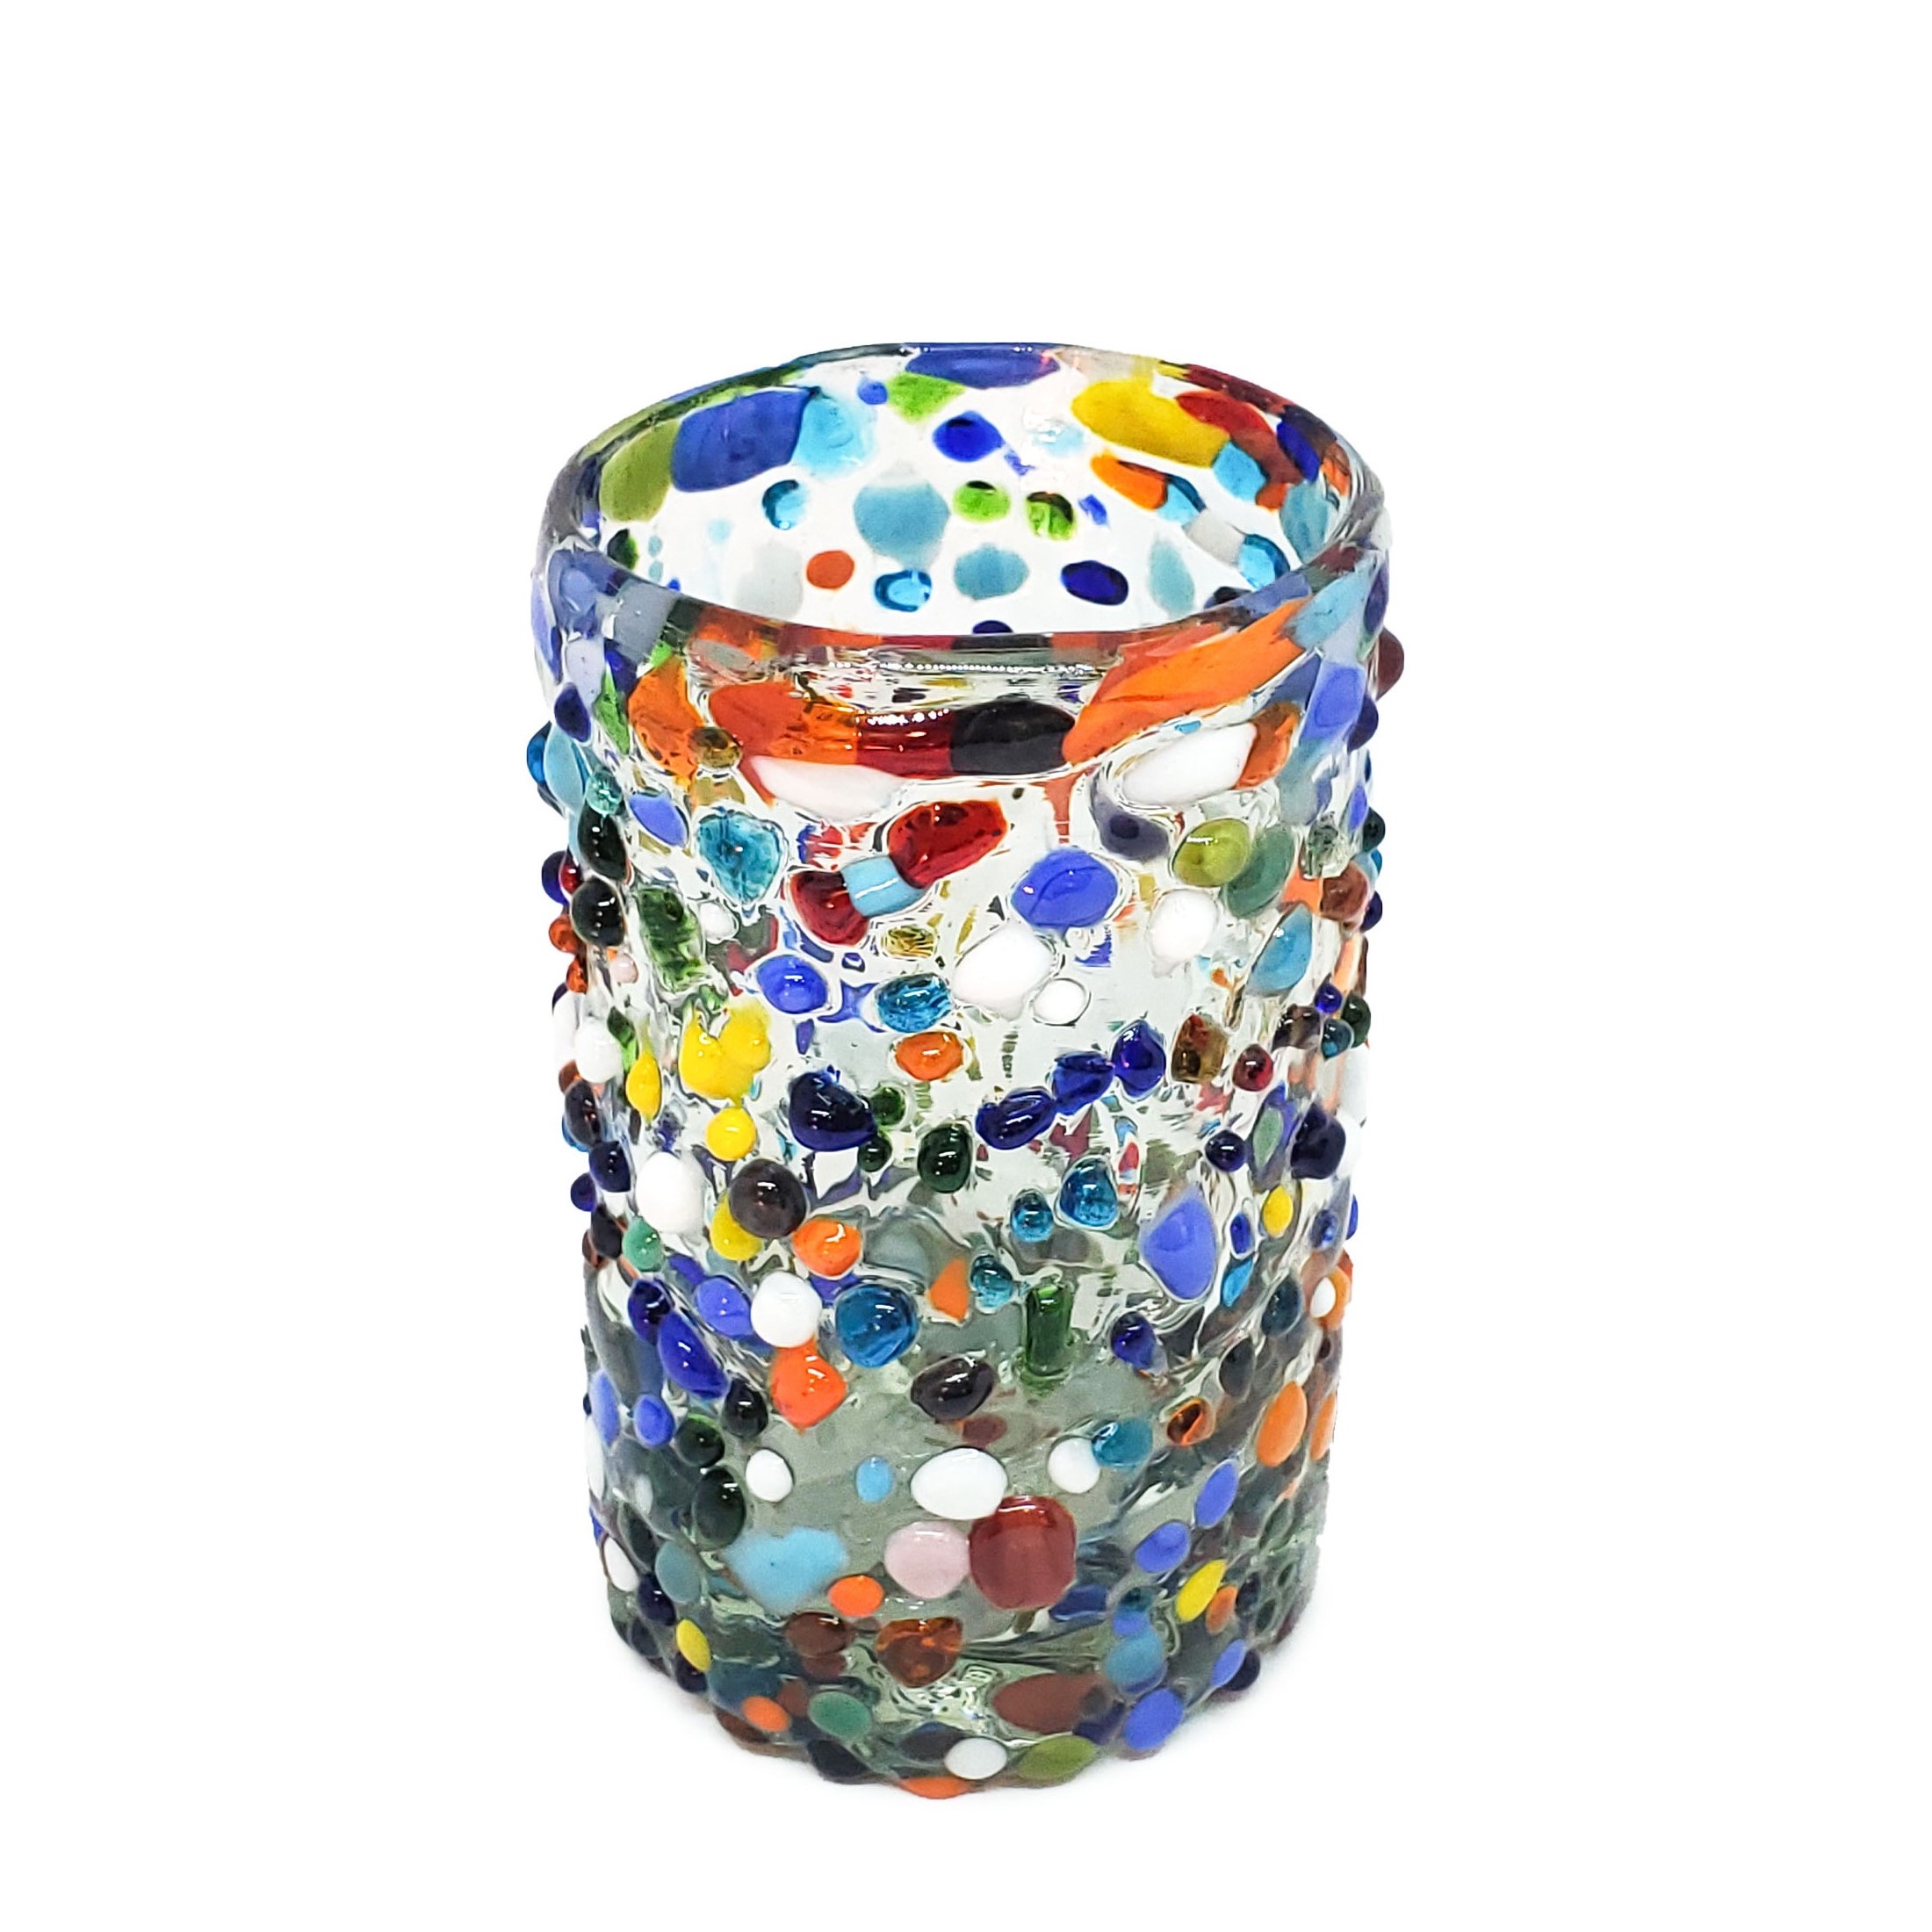 Ofertas / Juego de 6 vasos Jugo 9oz Confeti granizado / Deje entrar a la primavera en su casa con éste colorido juego de vasos. El decorado con vidrio multicolor los hace resaltar en cualquier lugar.